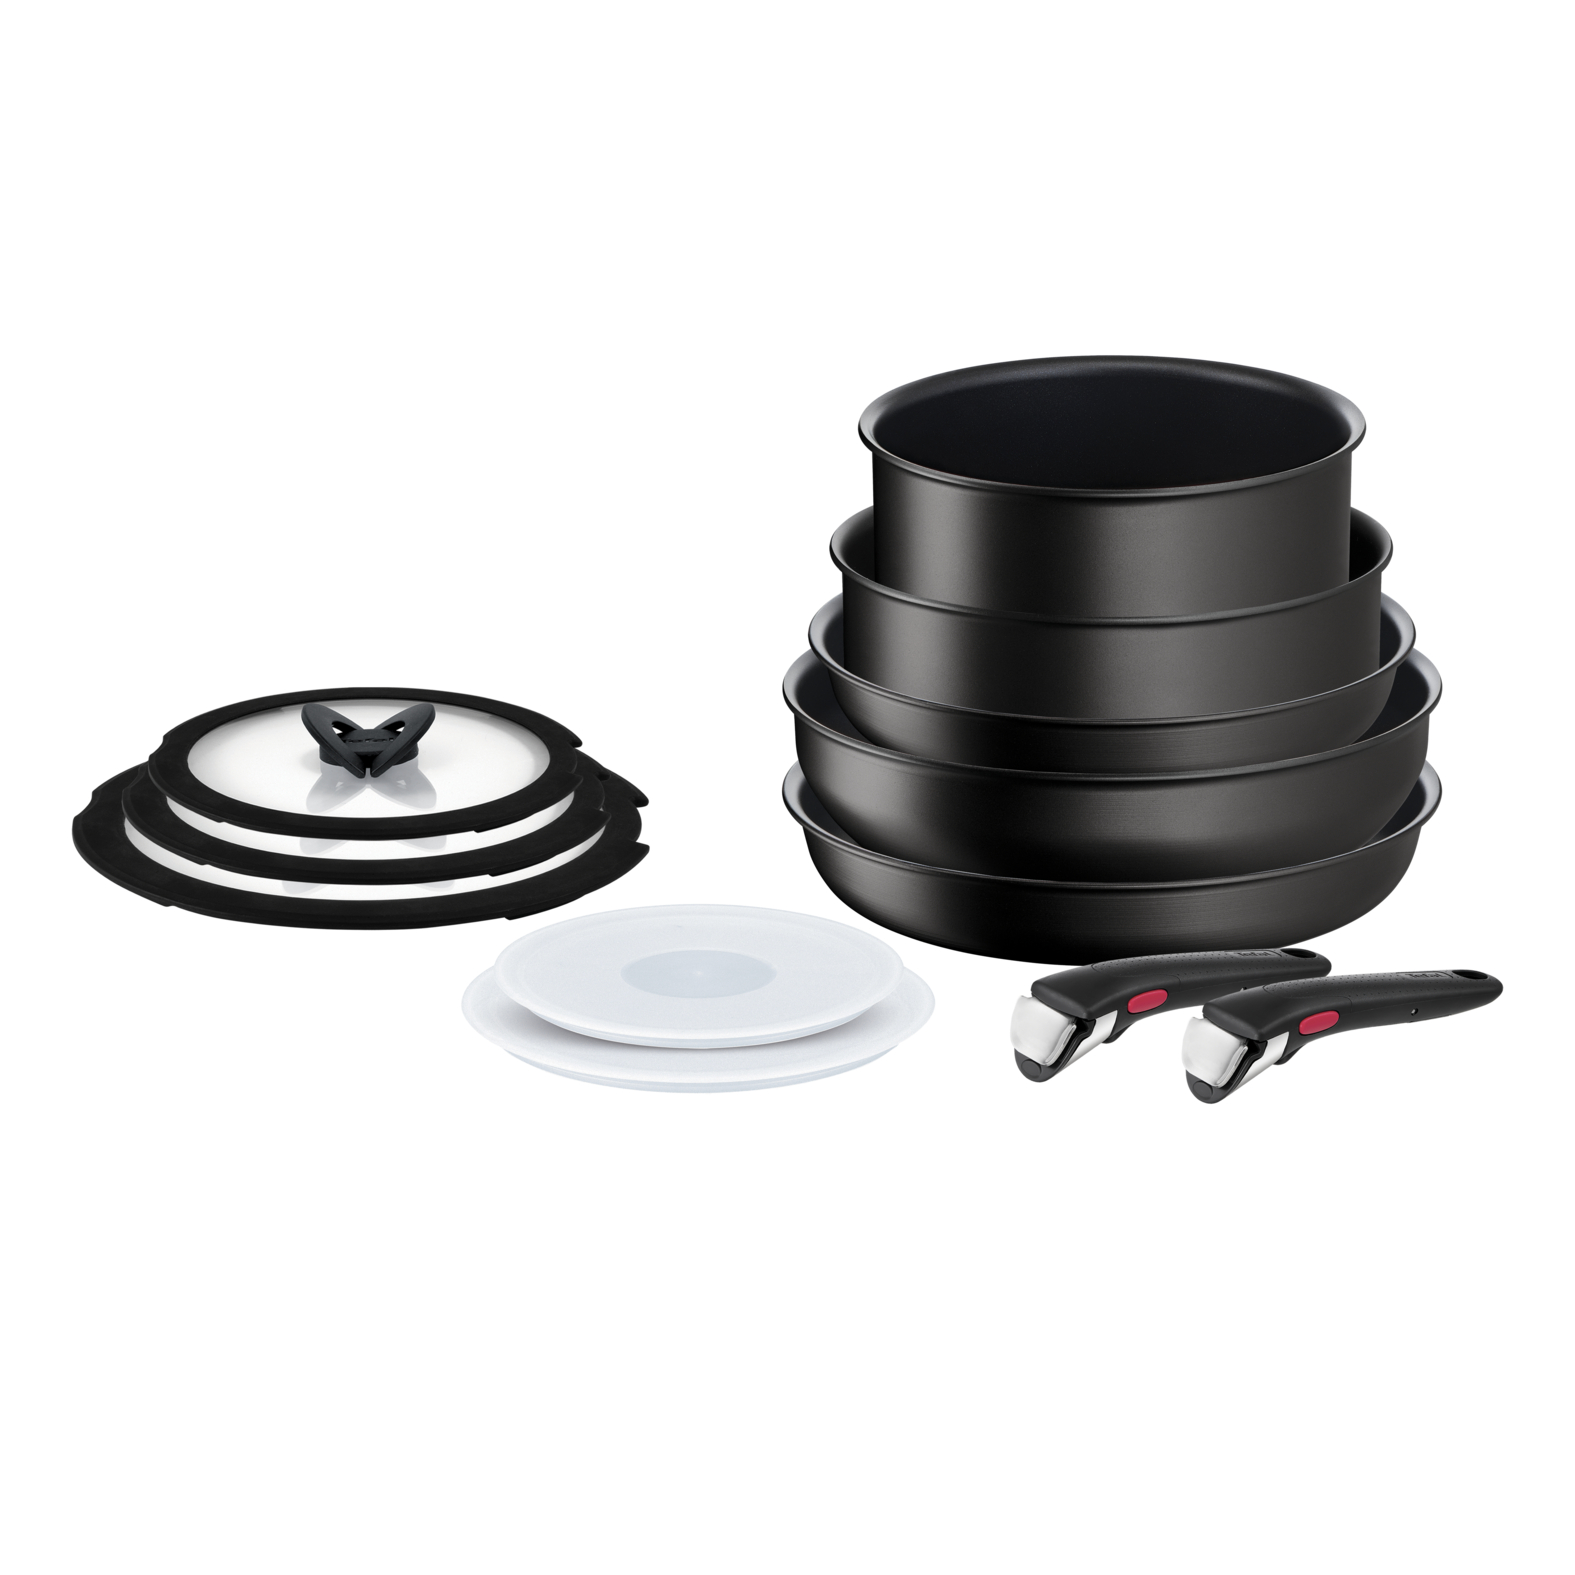 Набор посуды со съемной ручкой Ingenio L7639453 12 предметов набор посуды rondell bueno 5 предметов rds 1658